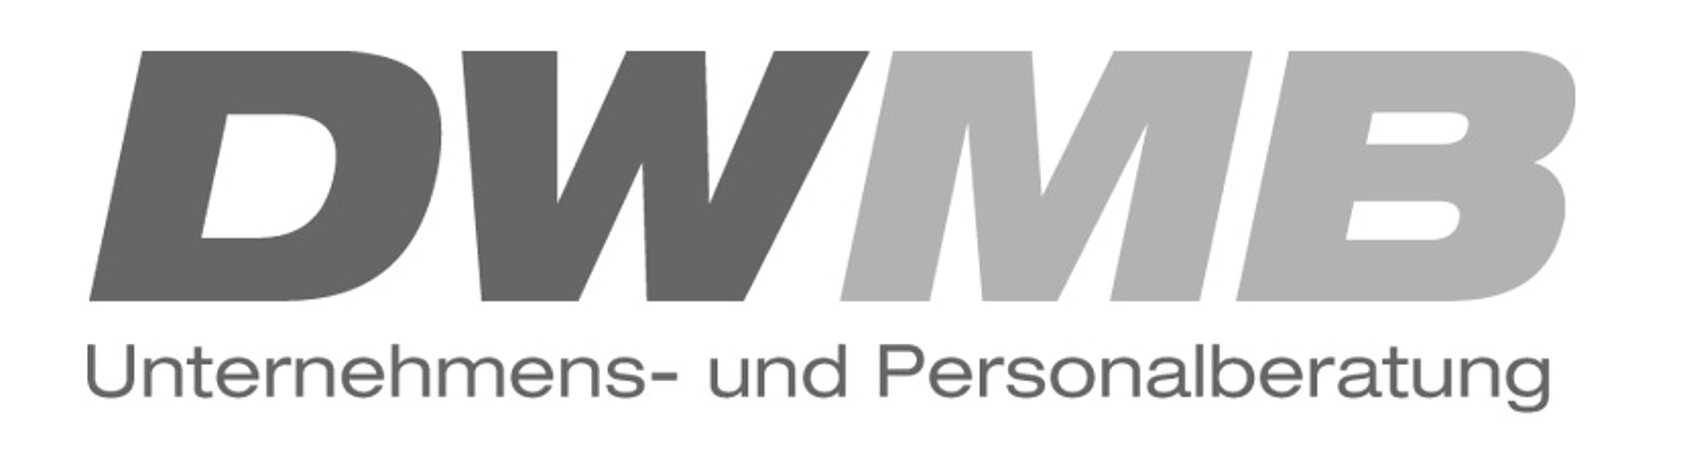 DWMB sucht Außendienstmitarbeiter/ Gebietsleitung (m/w/d) Umweltschonende Wasser- / Heizwassertechnik Region Hessen (Home-Office)